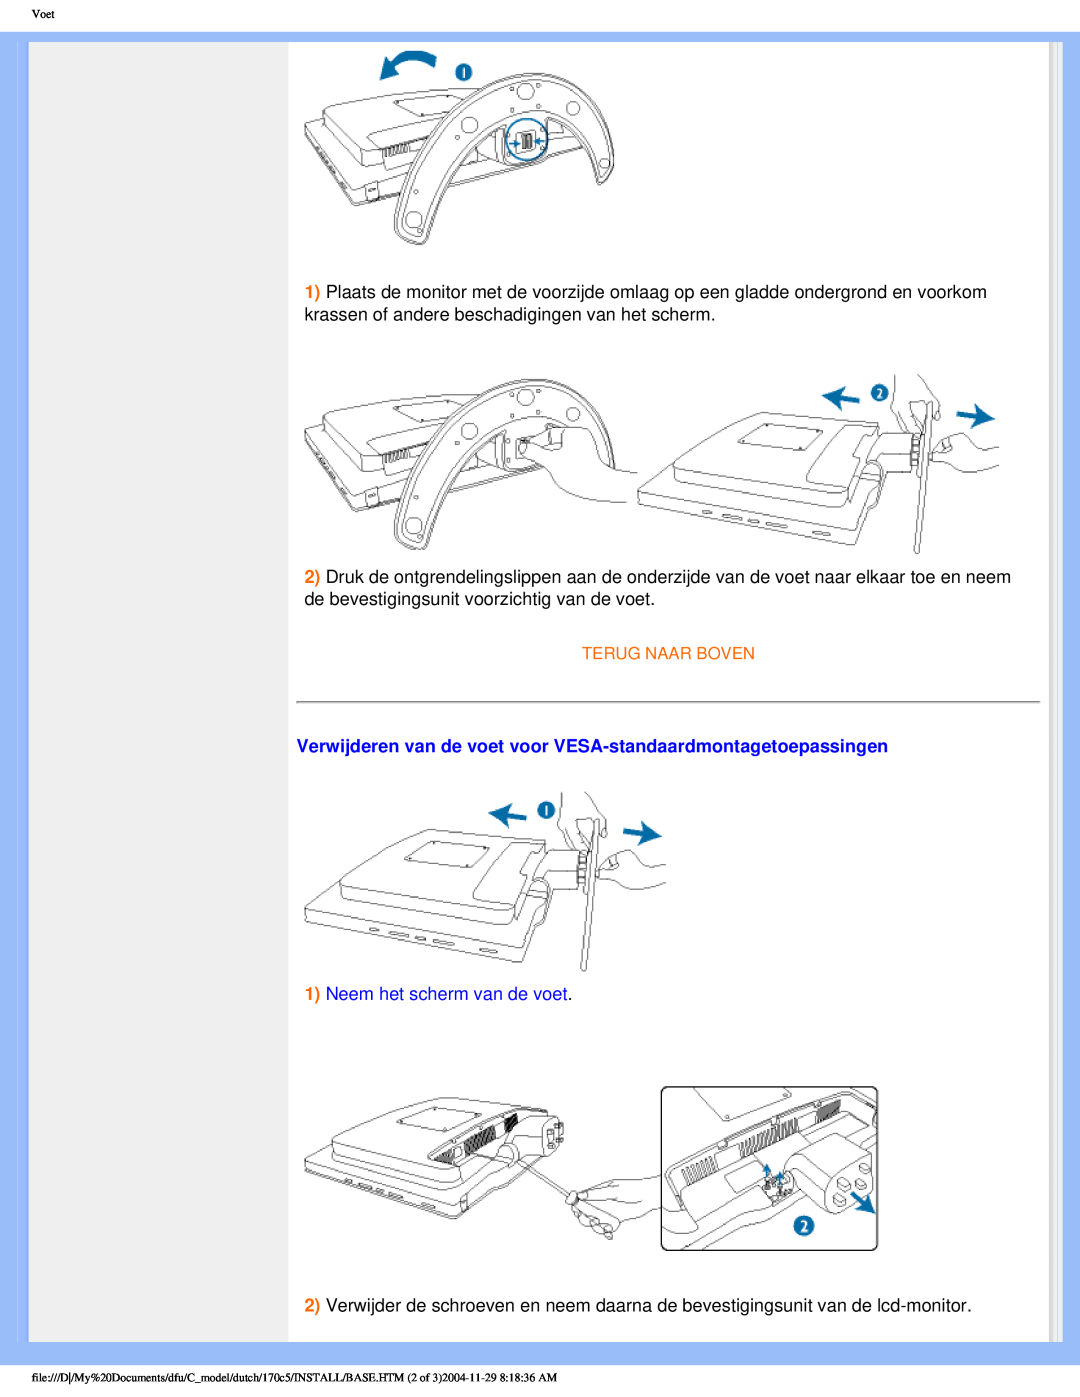 Philips 170C5 user manual Verwijderen van de voet voor VESA-standaardmontagetoepassingen, Neem het scherm van de voet 